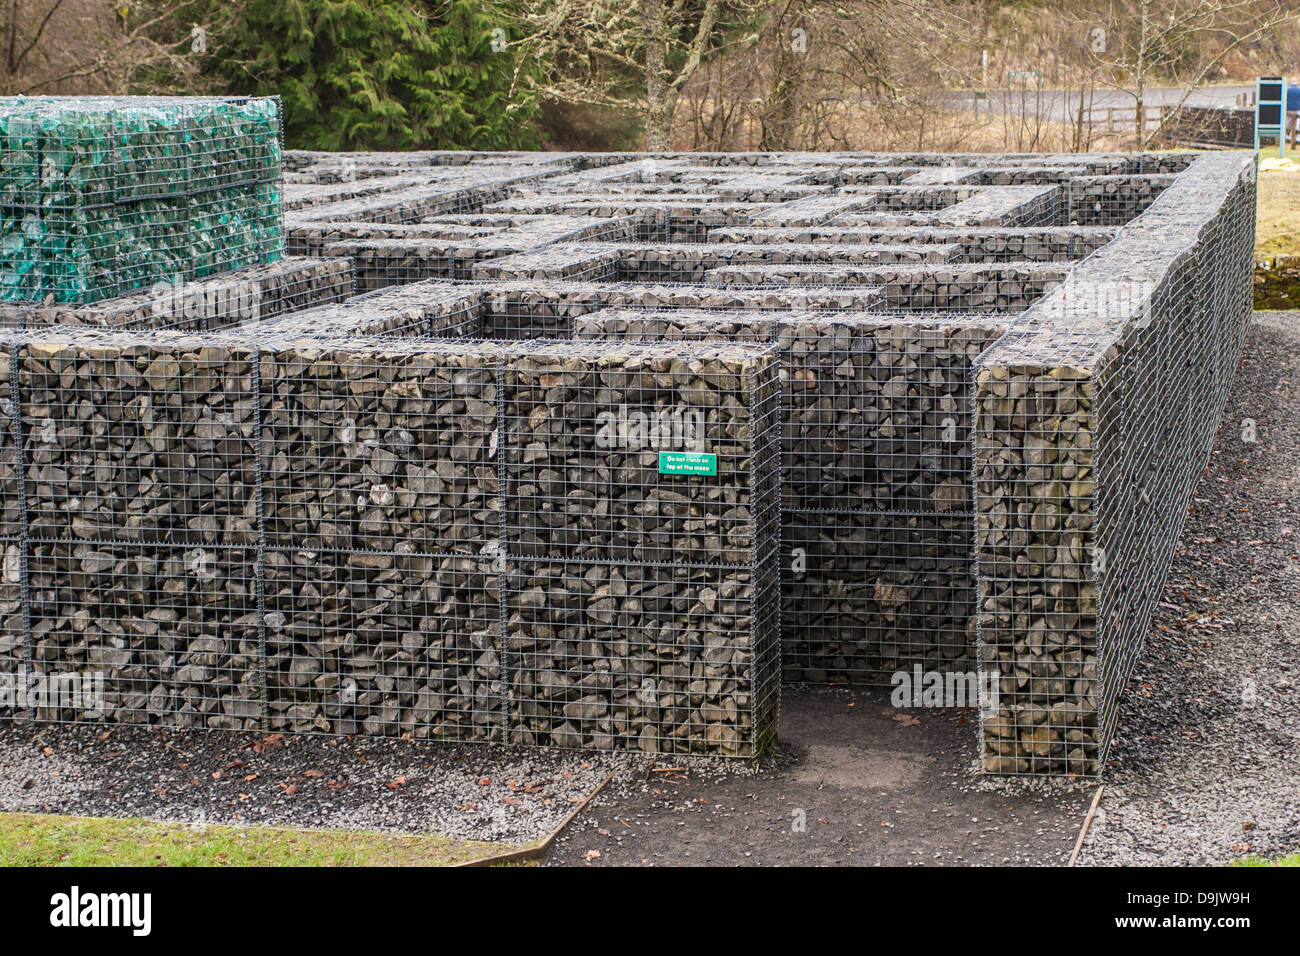 Labyrinthe minotaure au château de Kielder, dans le Northumberland. Banque D'Images